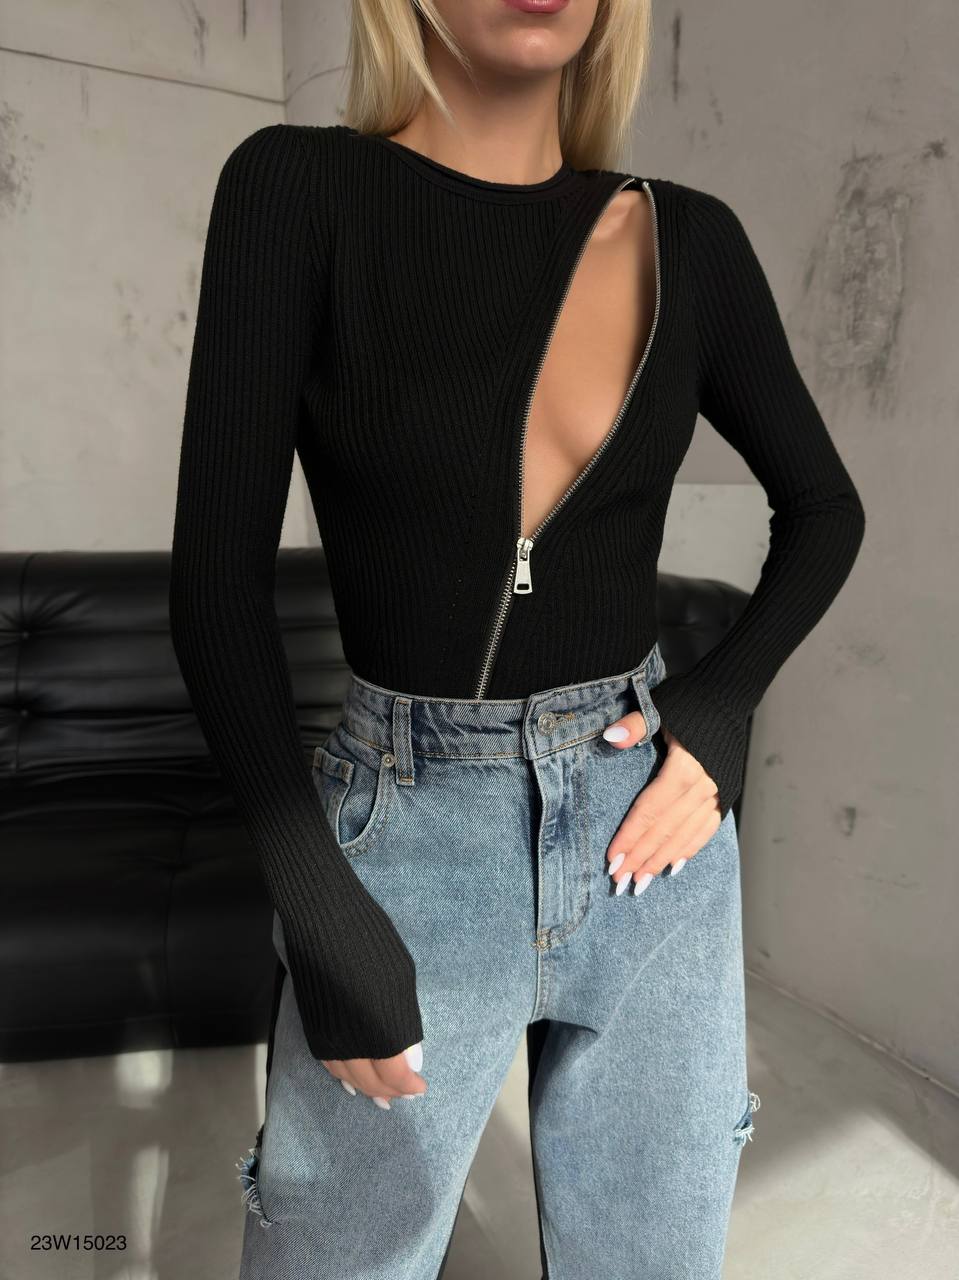 Дамска блуза Courtney Black  https://bvseductive.com/products/дамска-блуза-courtney-black  стилна дамска блуза в черен цвят със секси акцент от цип по диагонал изработена от мека, приятна материя комфортен и лесно комбинативен модел със силует, който